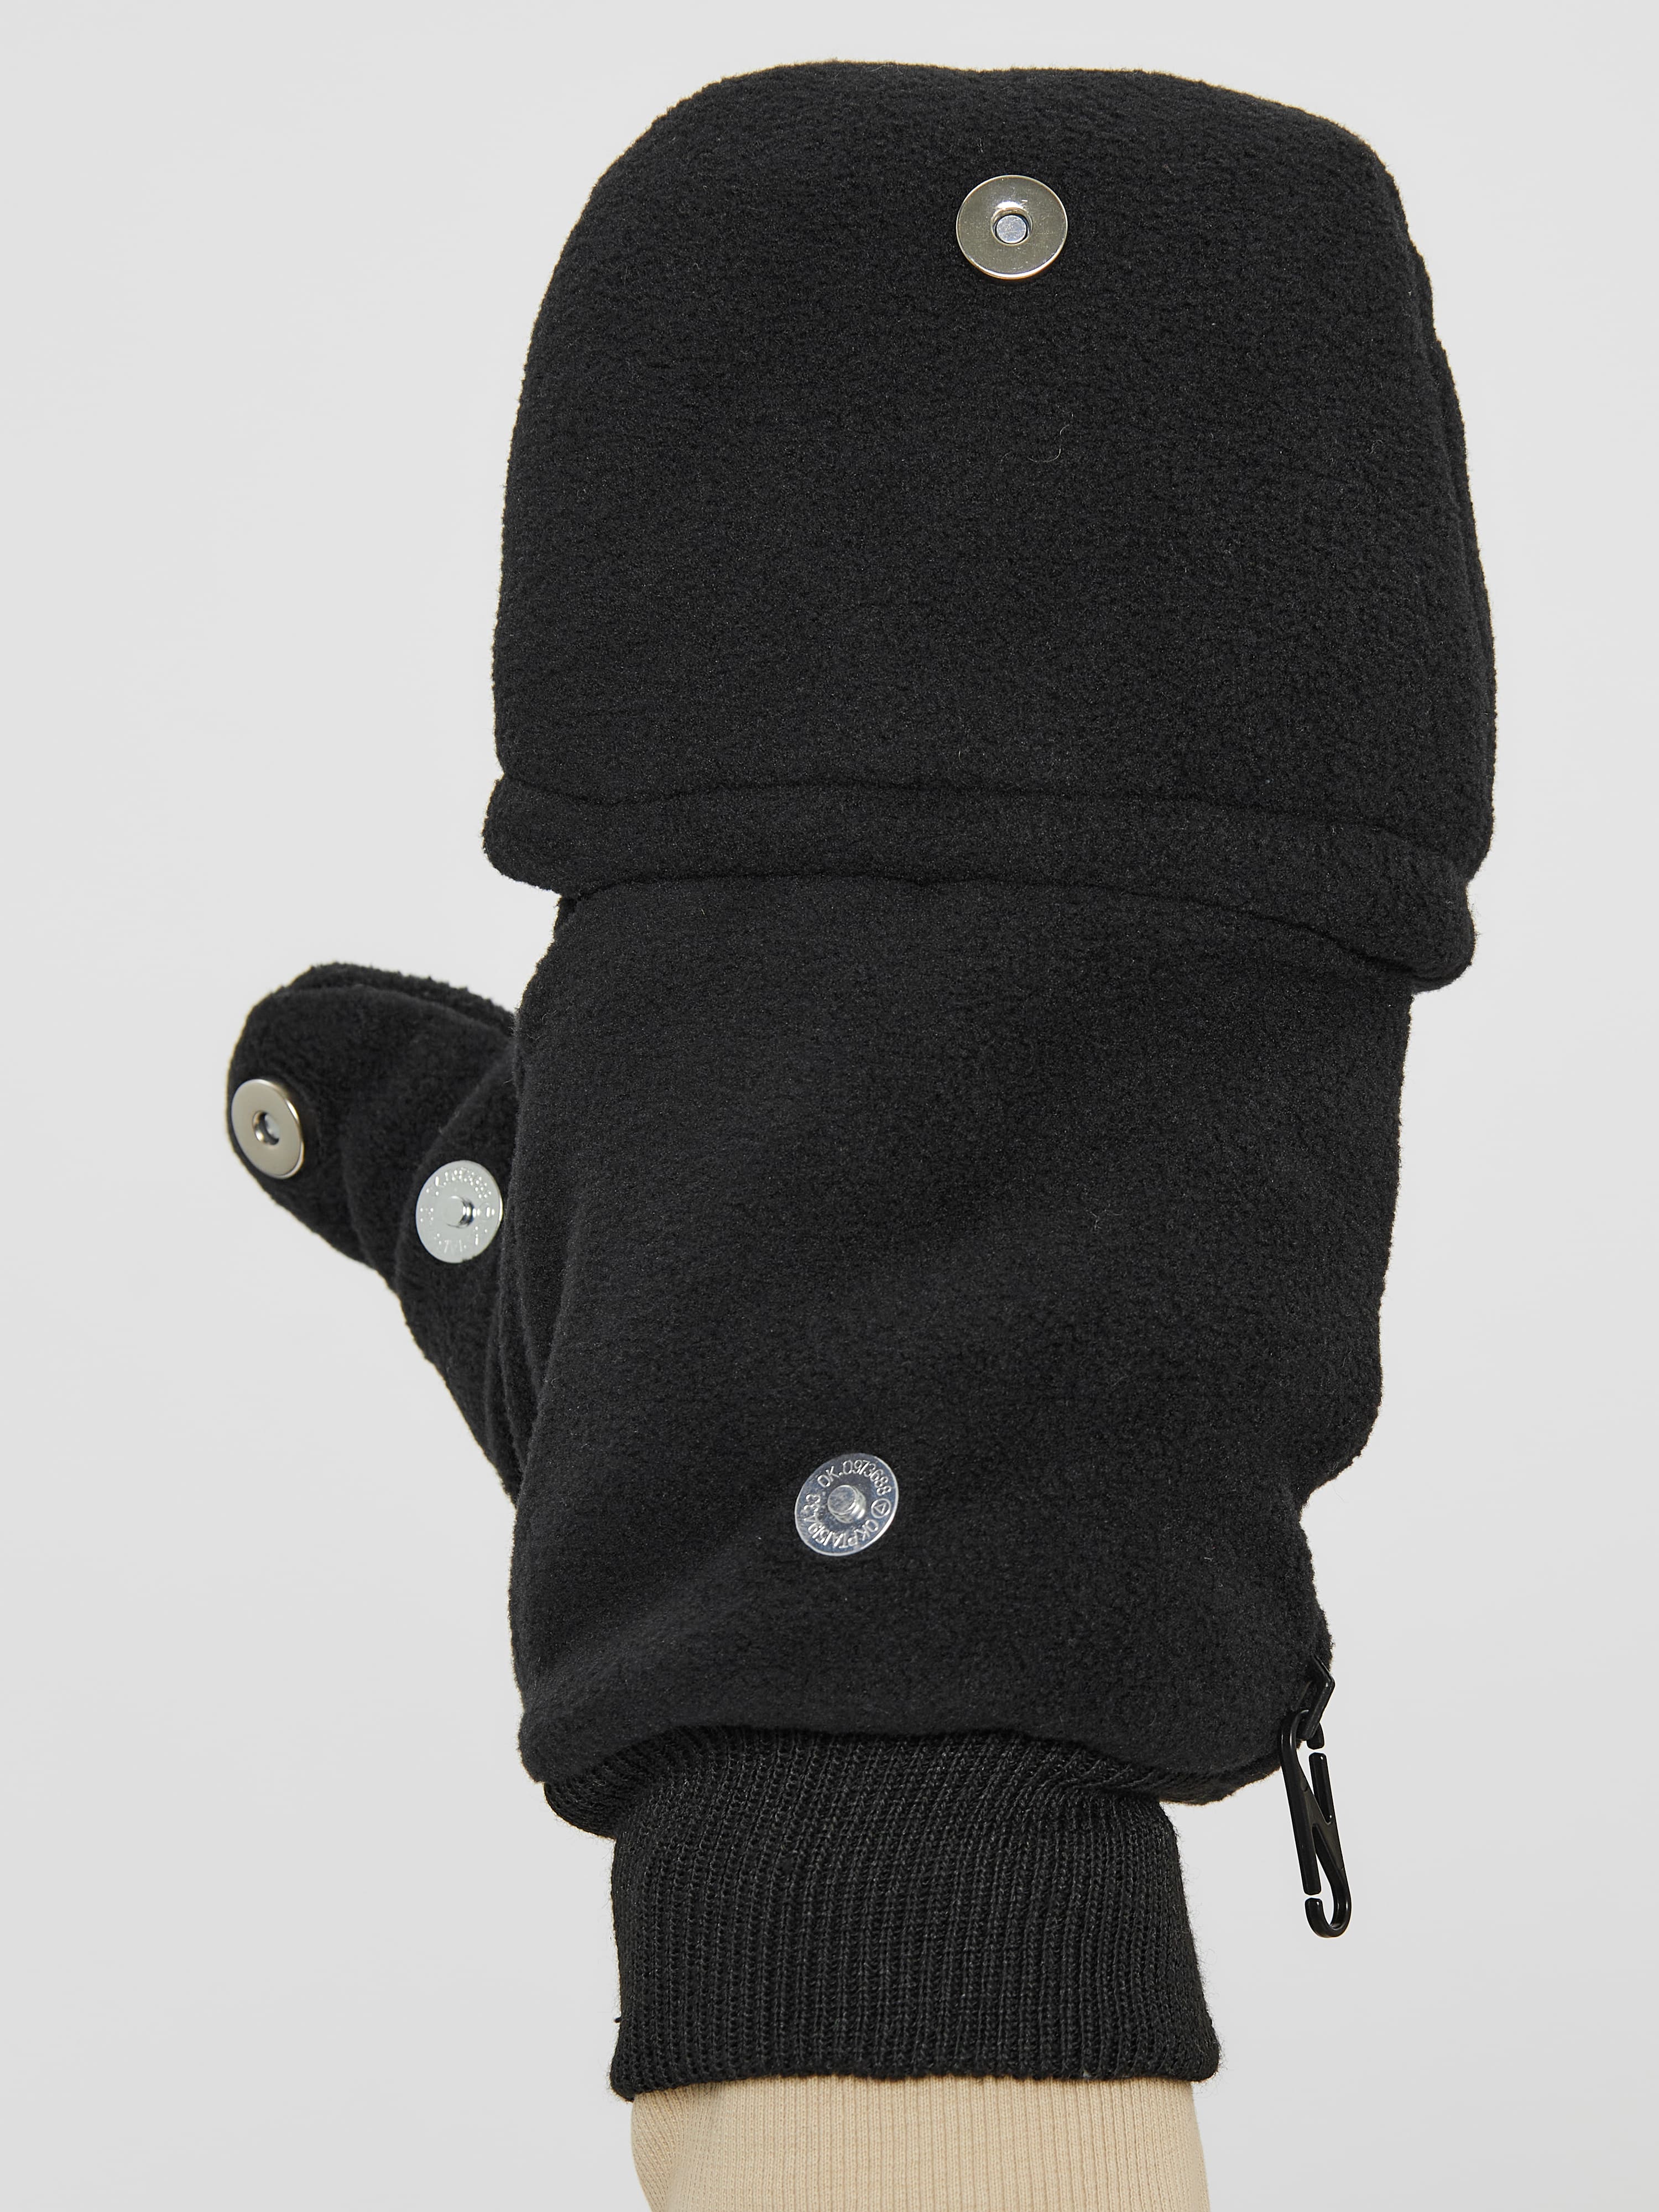 Варежки-перчатки (чёрные) из флиса оптом и в розницу